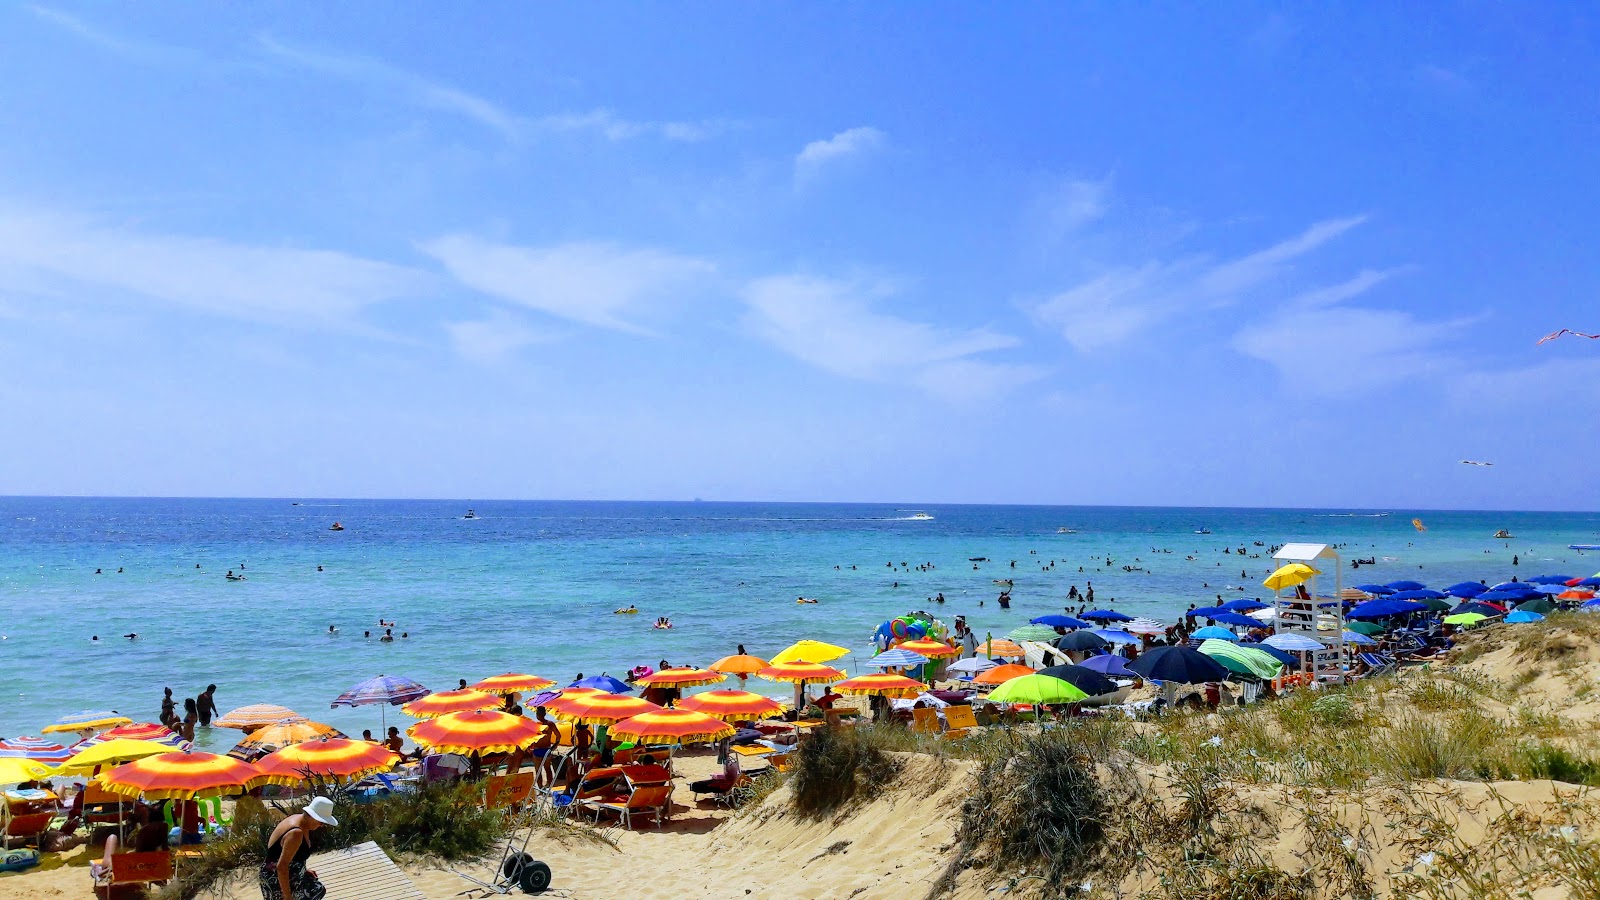 佩斯科卢塞海滩的照片 - 受到放松专家欢迎的热门地点